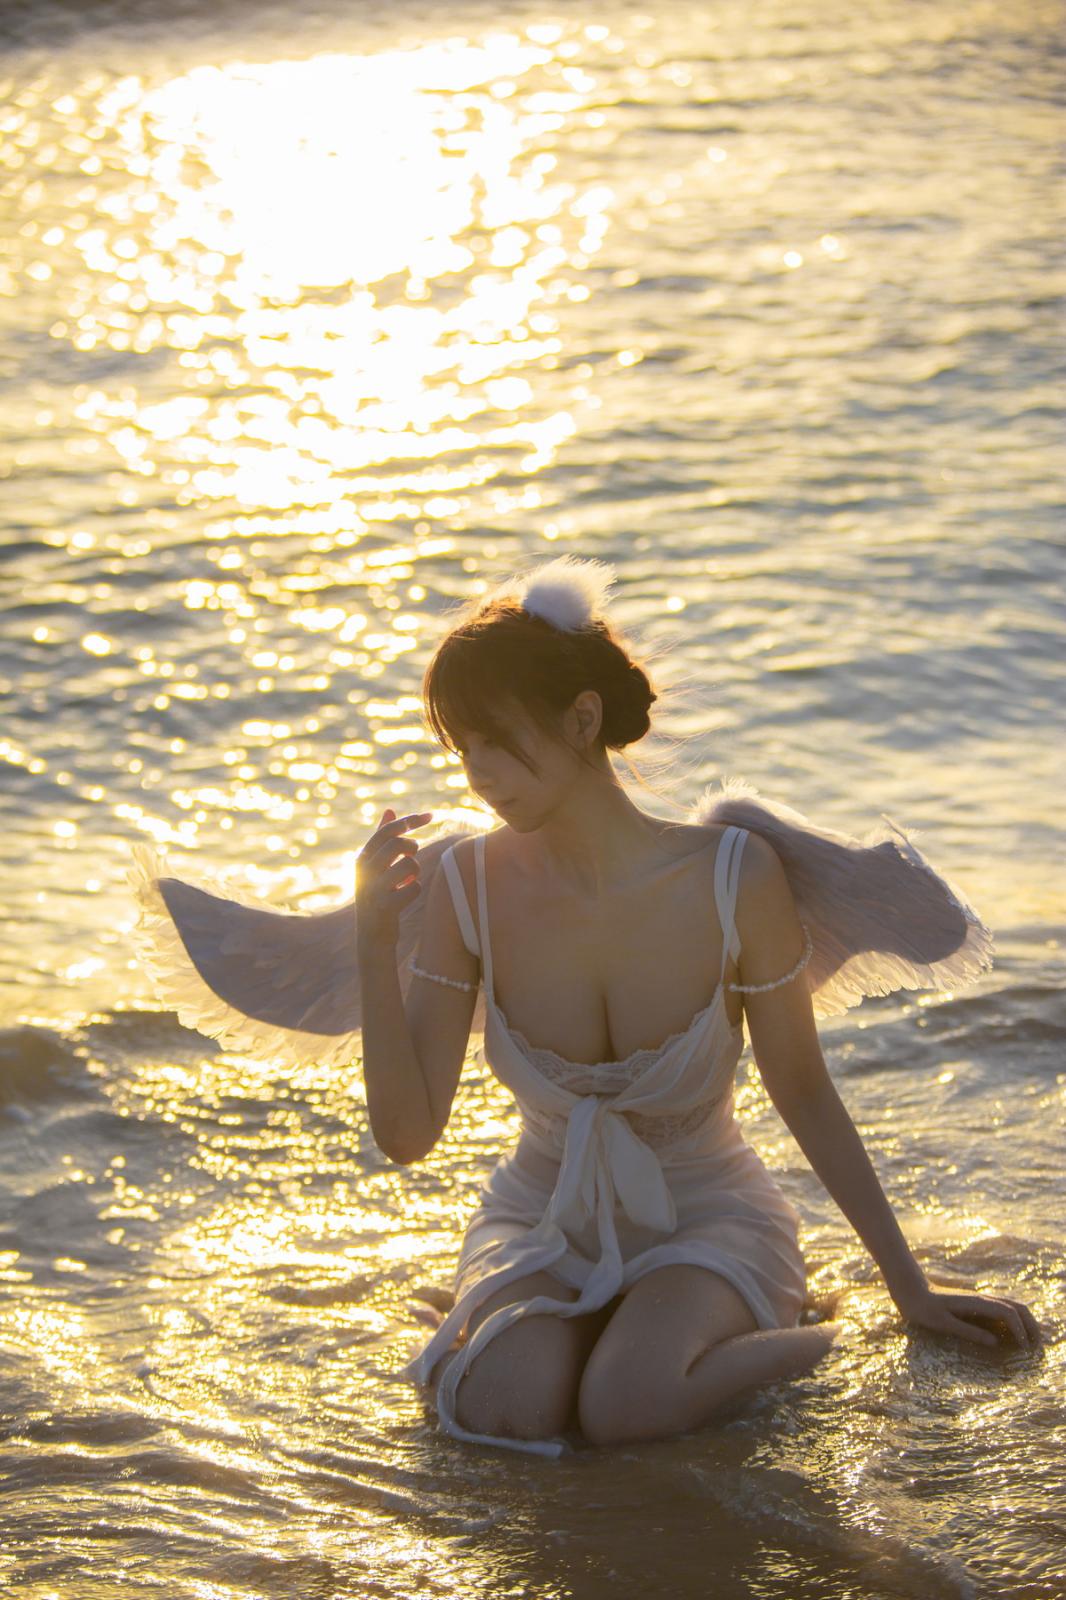 次元少女念雪ww海边神明少女主题沙滩天使装扮白色吊带裙露蕾丝内衣诱惑写真50P